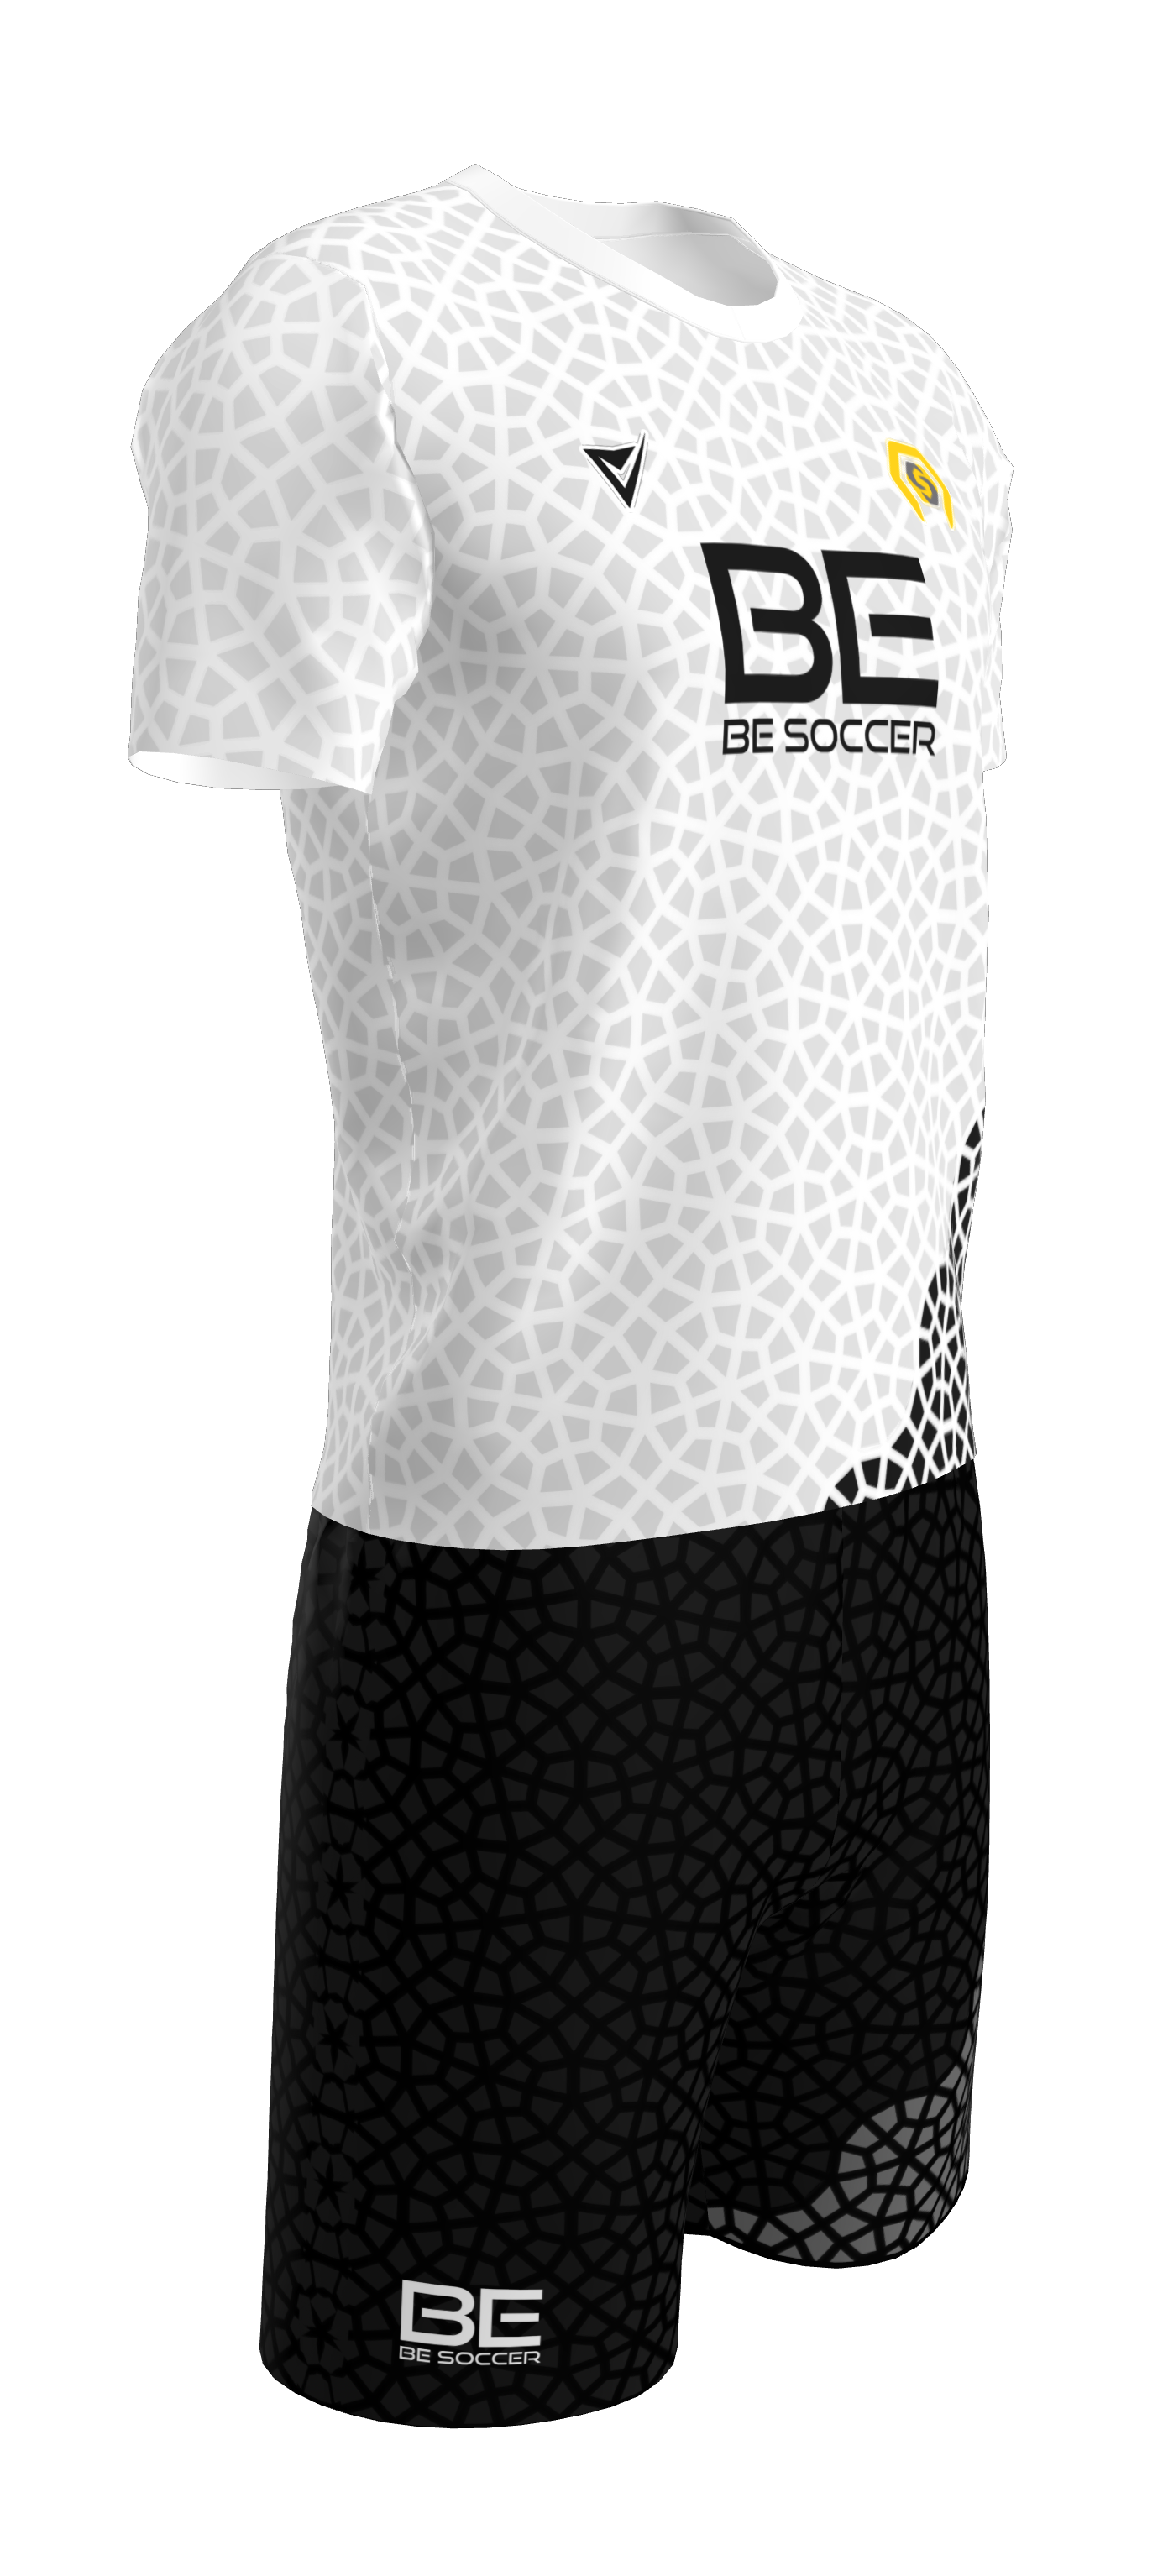 BE Soccer Development - White